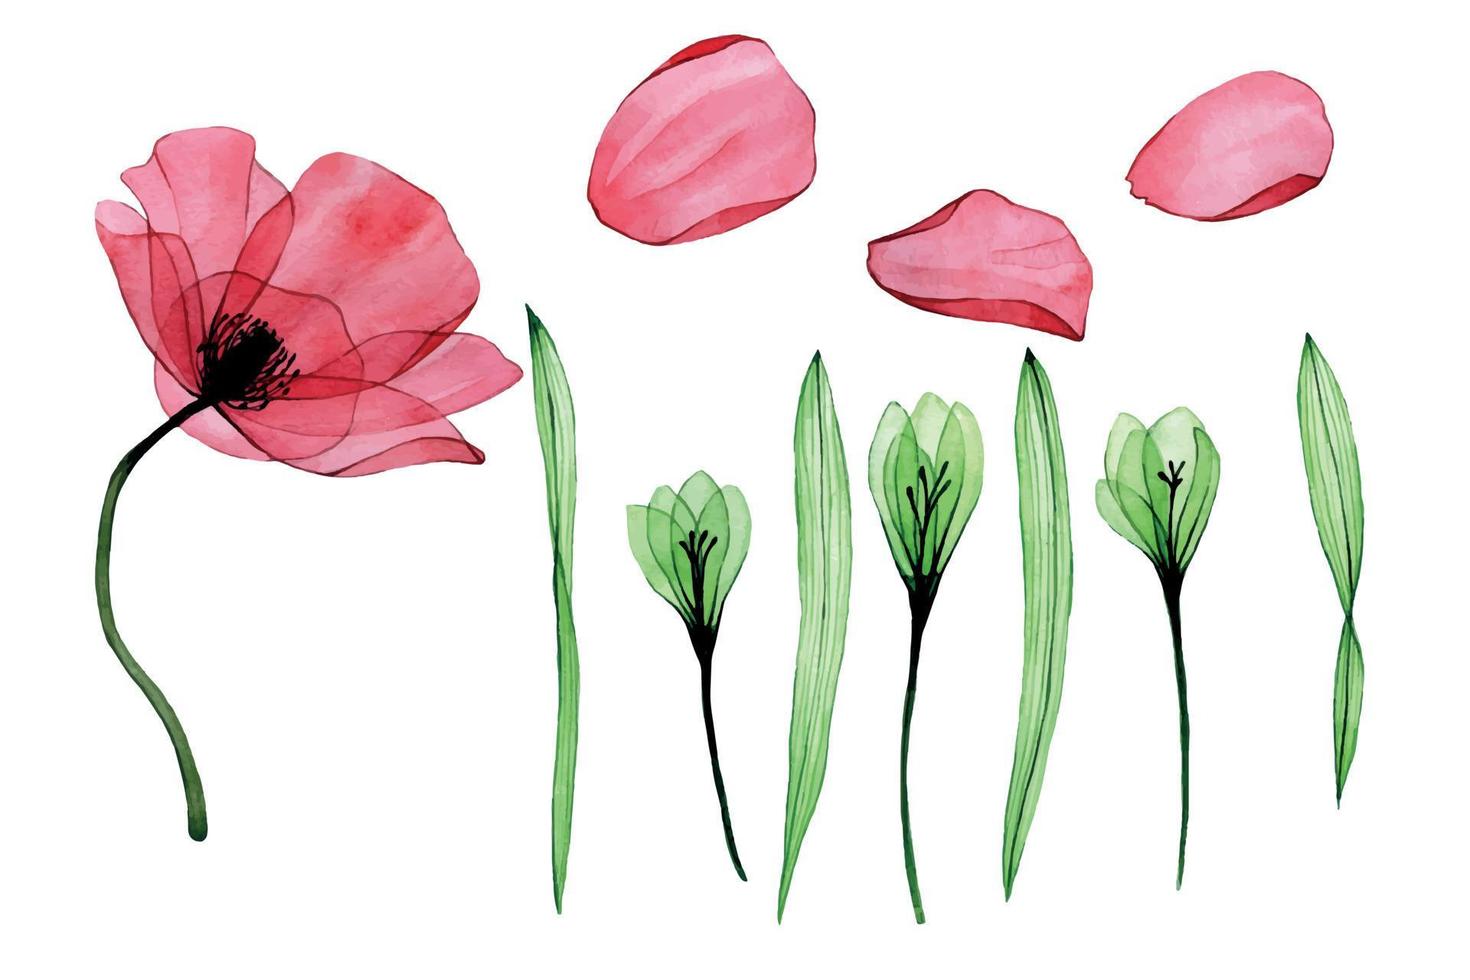 Aquarell-Set. transparente Blüten aus Mohn, Phlox, Blütenblättern und Blättern isoliert auf weißem Hintergrund. zeichnung einer röntgensammlung mit grünen und rosa blüten von mohn und phlox. Clip Art vektor